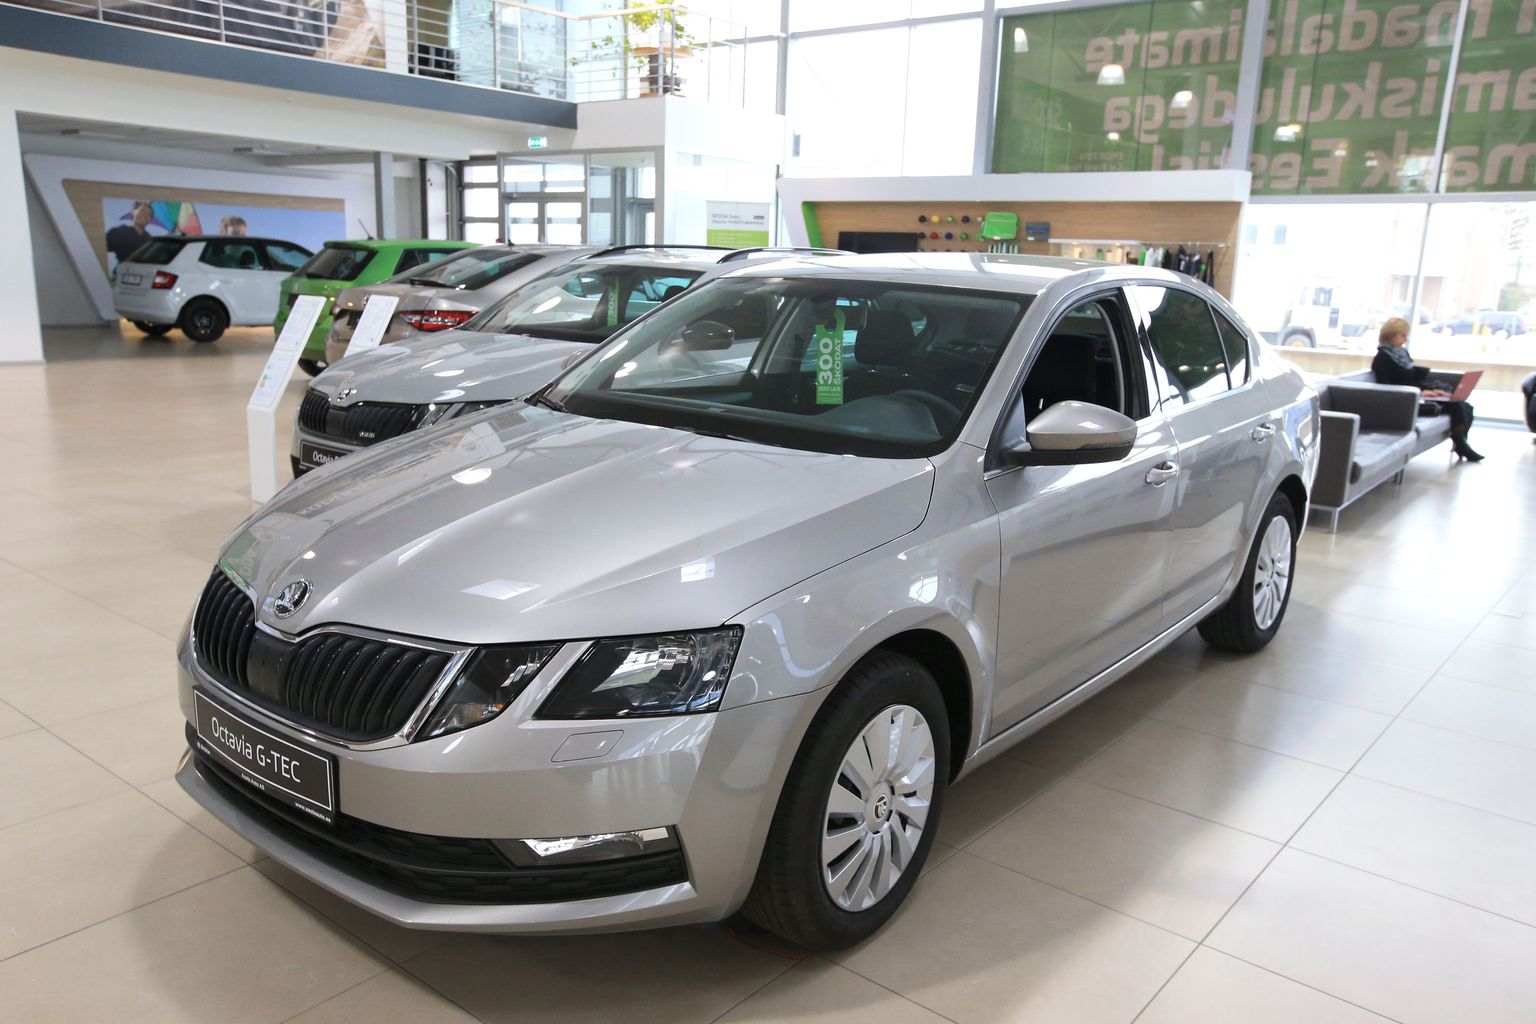 Uute autode müügiedetabelis hoiab esikohta Škoda, mille müüduim mudel on Octavia.